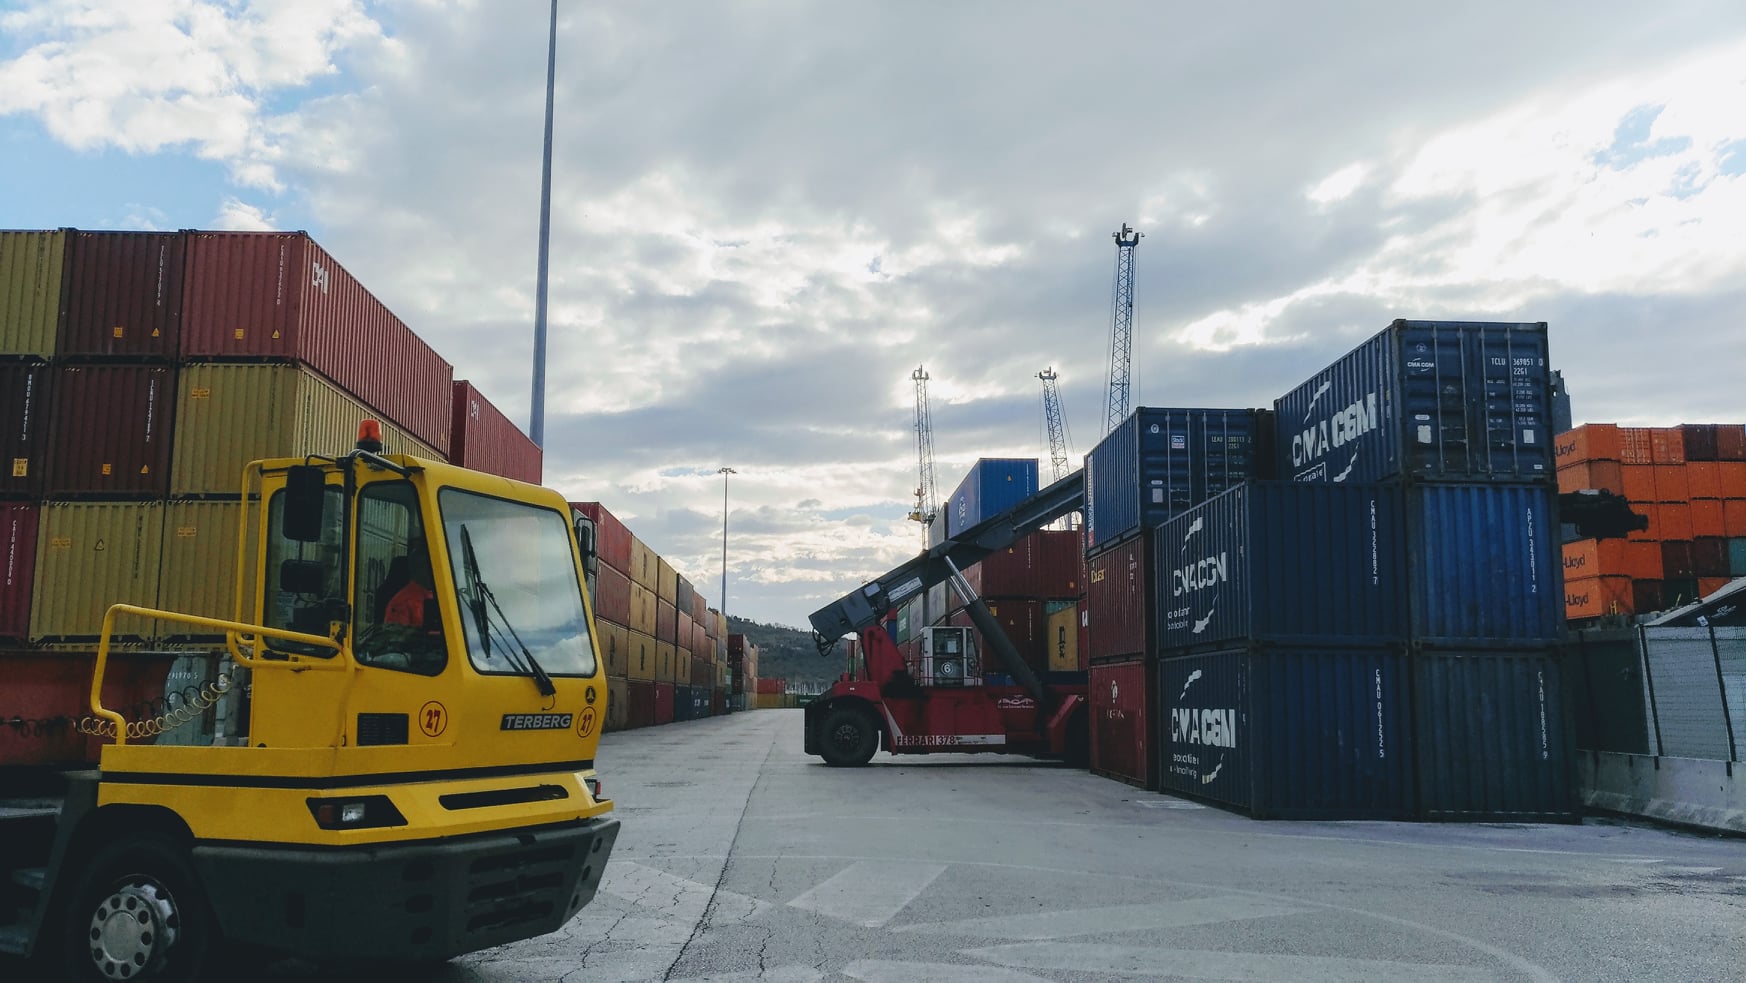 Porti dell’Adriatico centrale: traffico merci in aumento rispetto ai numeri pre Covid